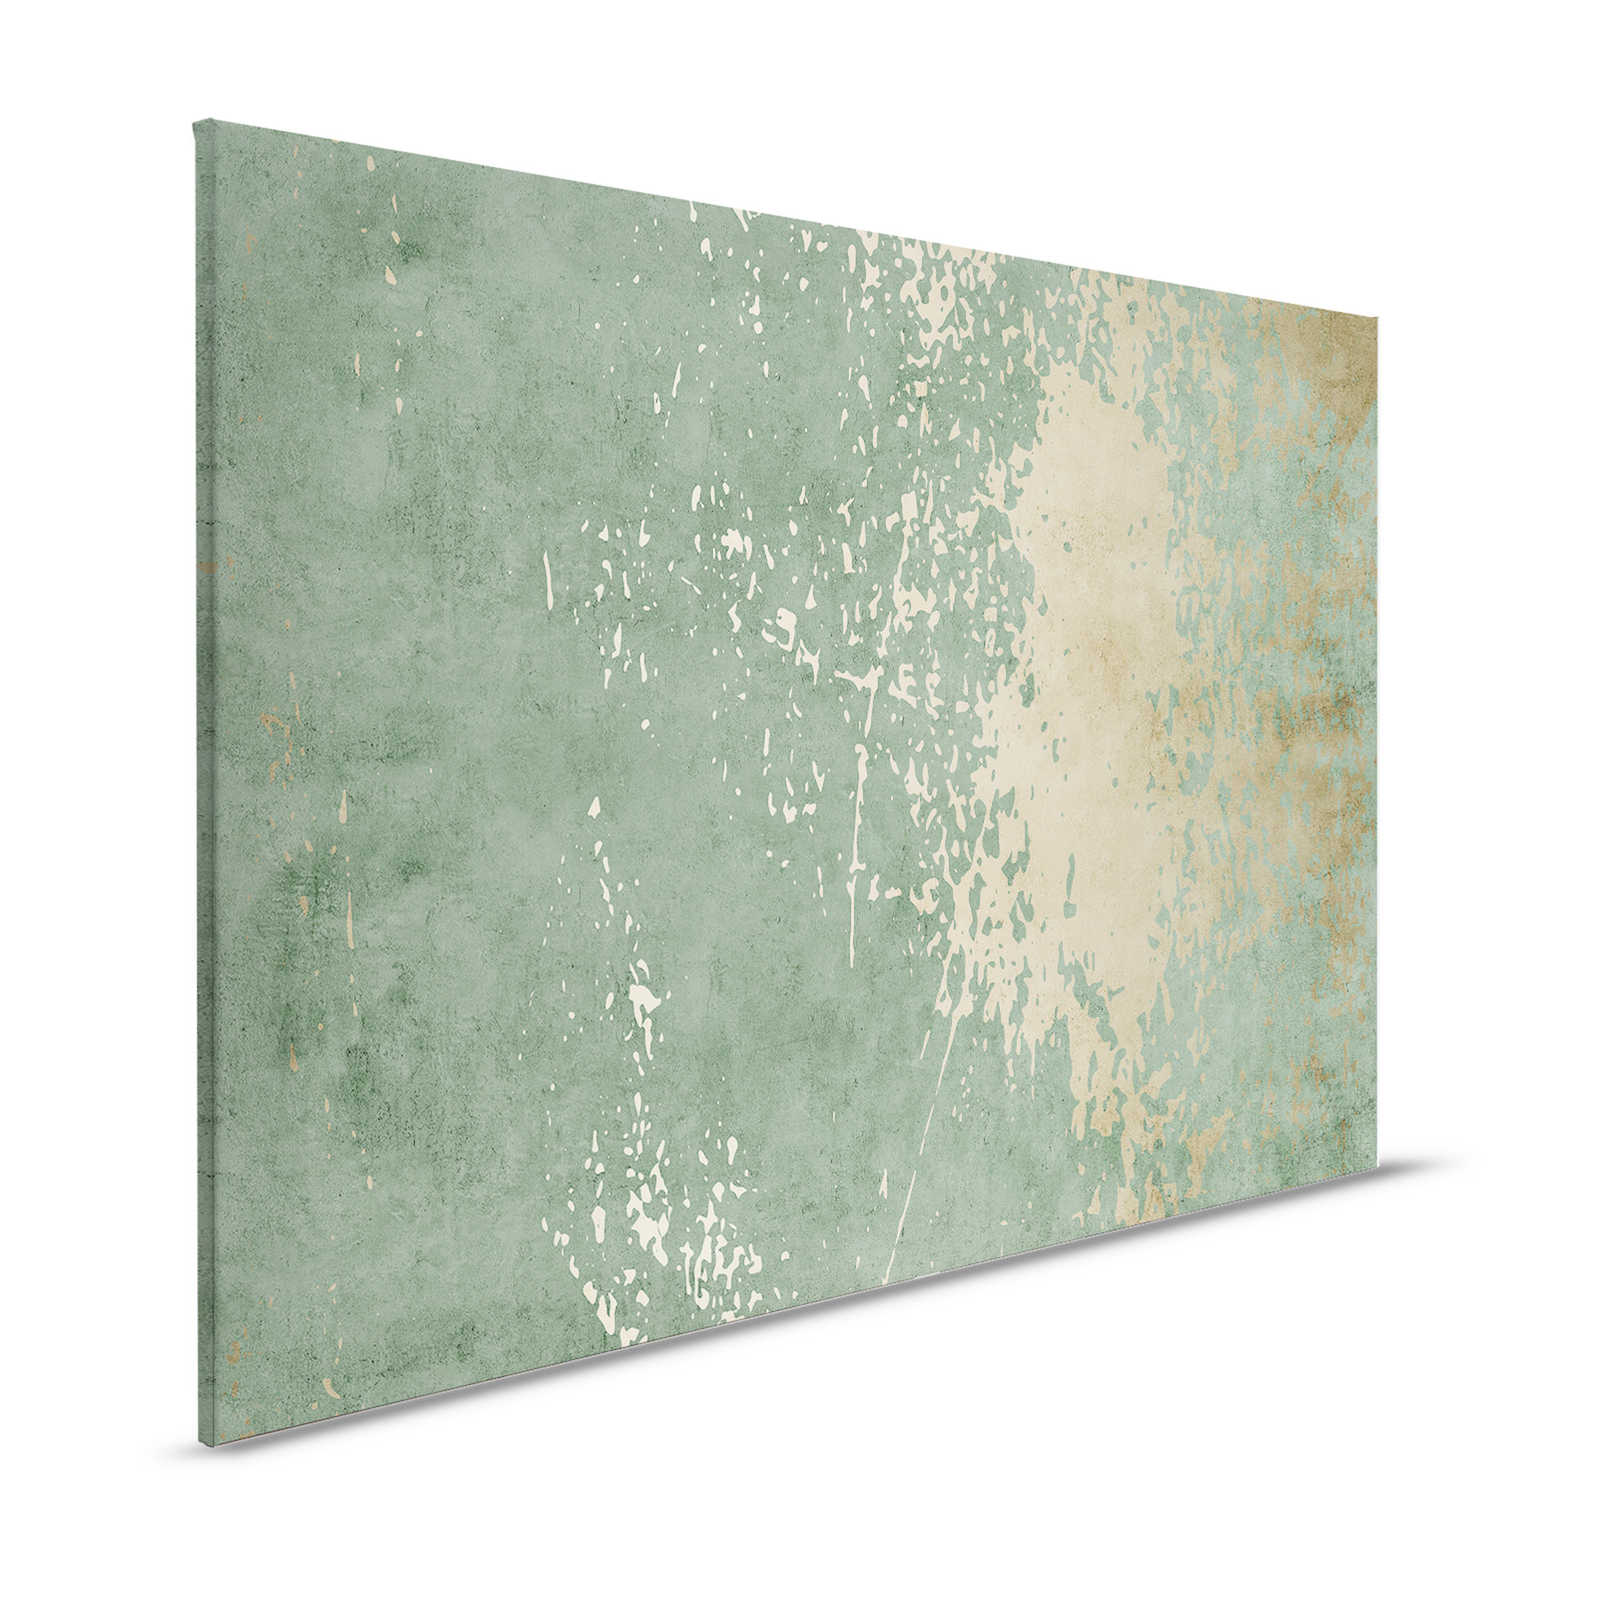 Vintage Wall 1 - Toile vert sauge & or aspect plâtre usé - 1,20 m x 0,80 m
